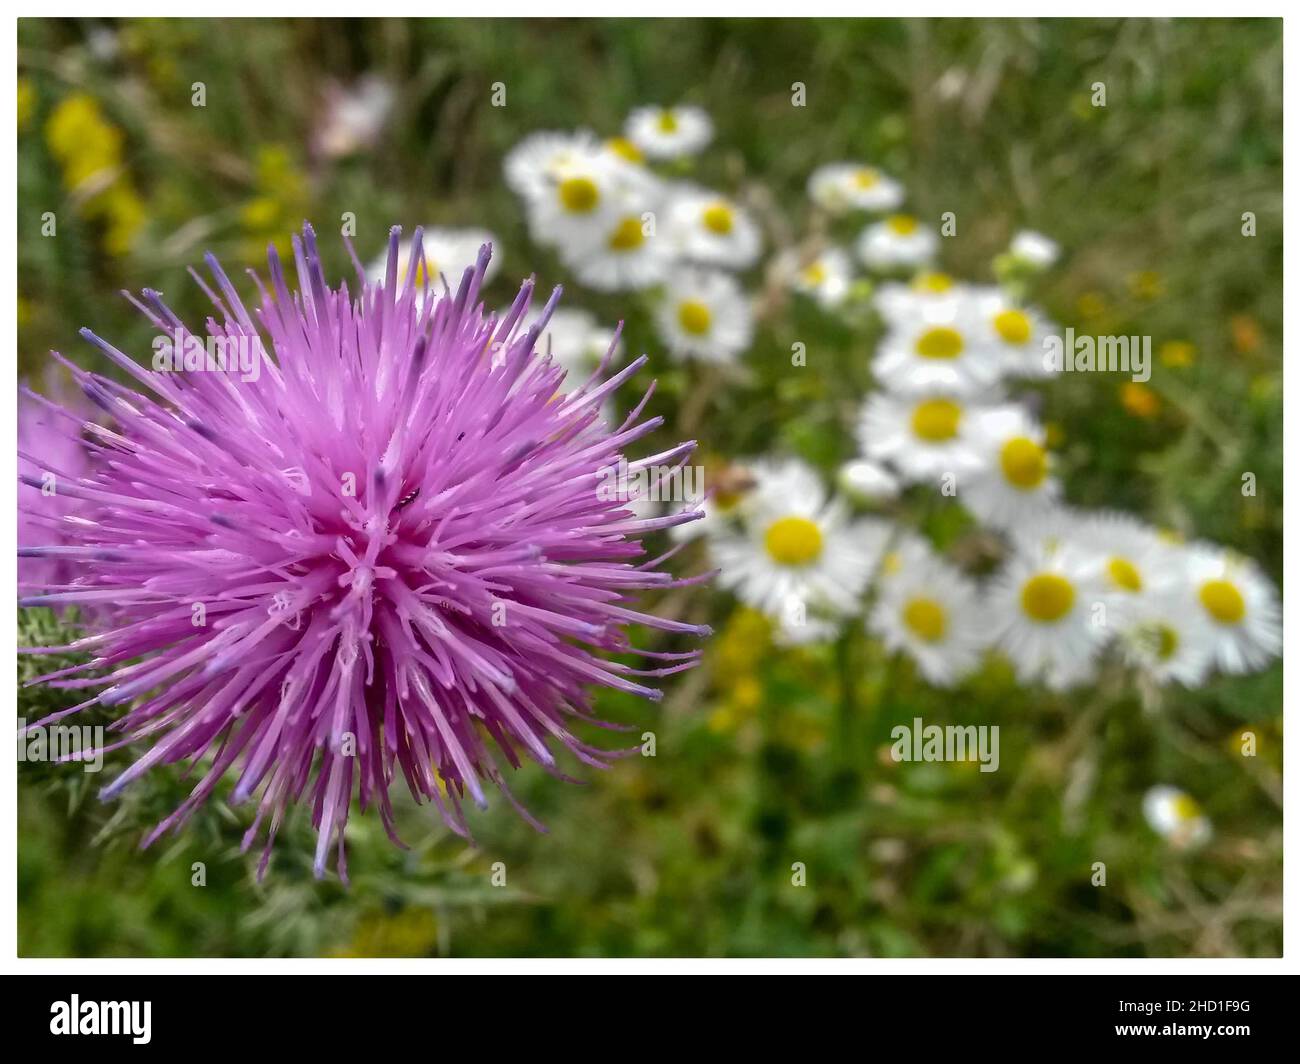 Selektive Fokusaufnahme einer lilafarbenen Distel in einem Feld Stockfoto